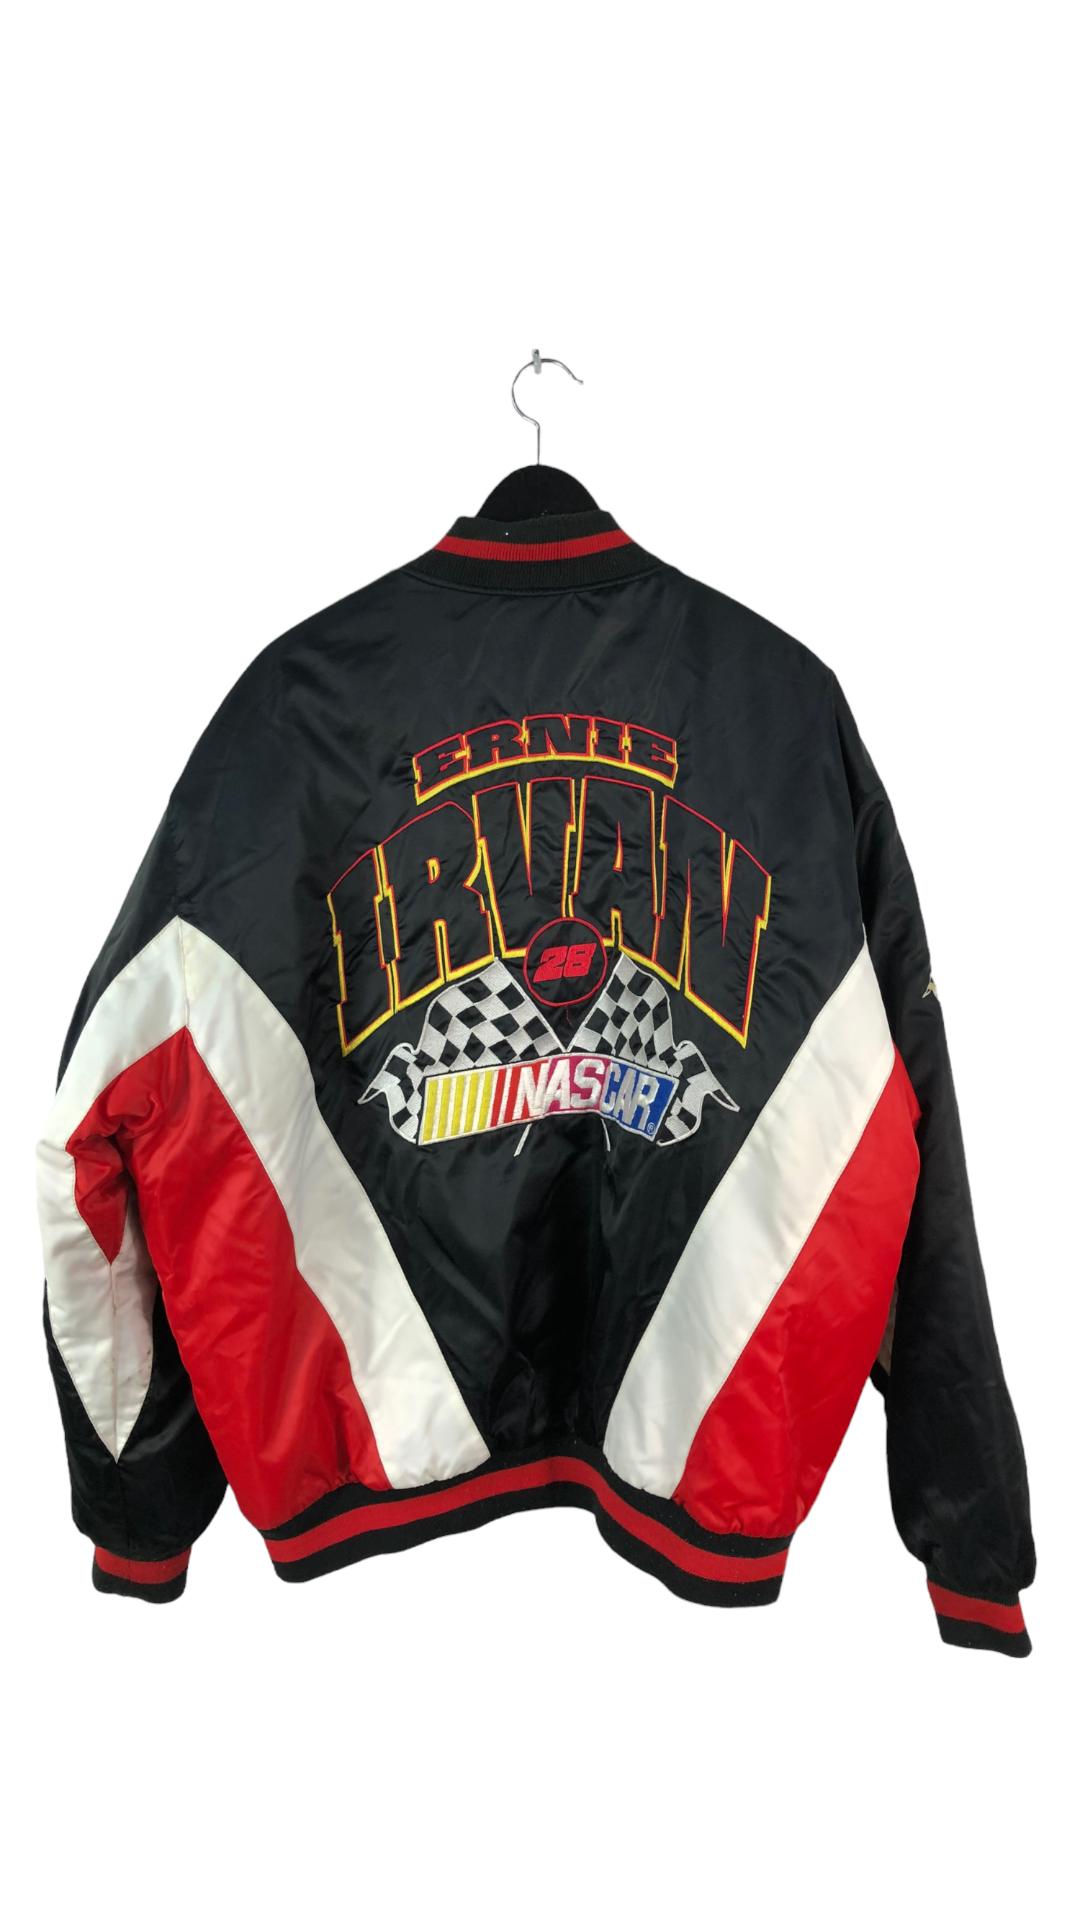 VTG Ernie Irvan 28 NASCAR Nylon Jacket Sz XL